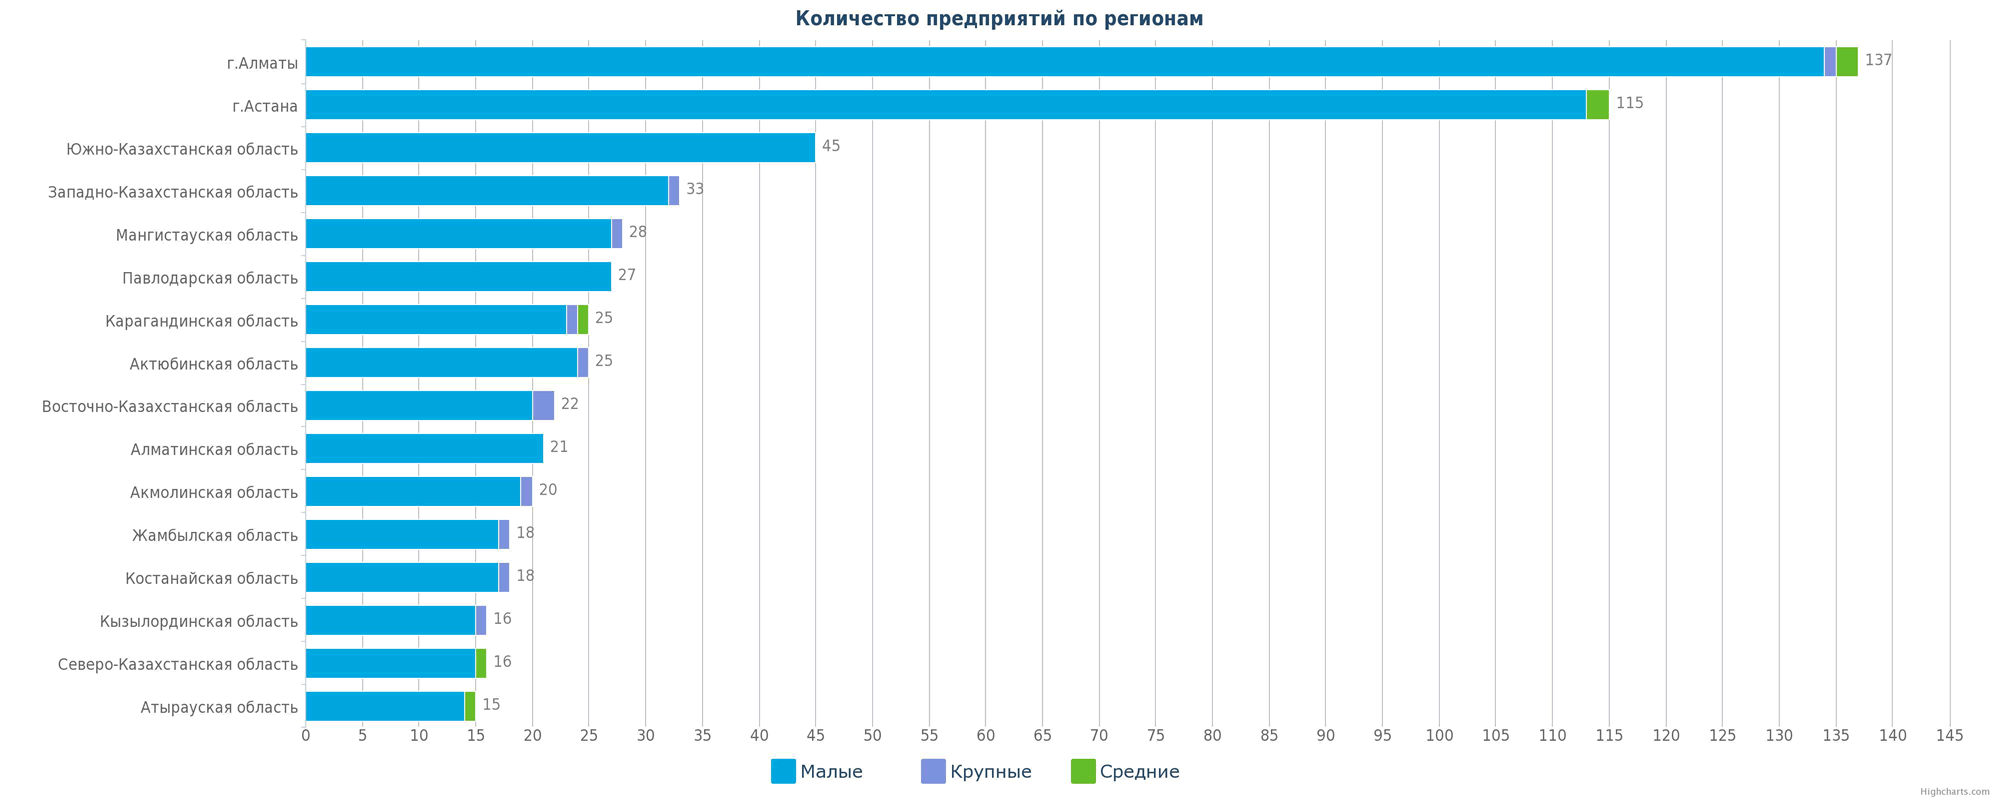 Количество новых компаний в справочнике по регионам Казахстана